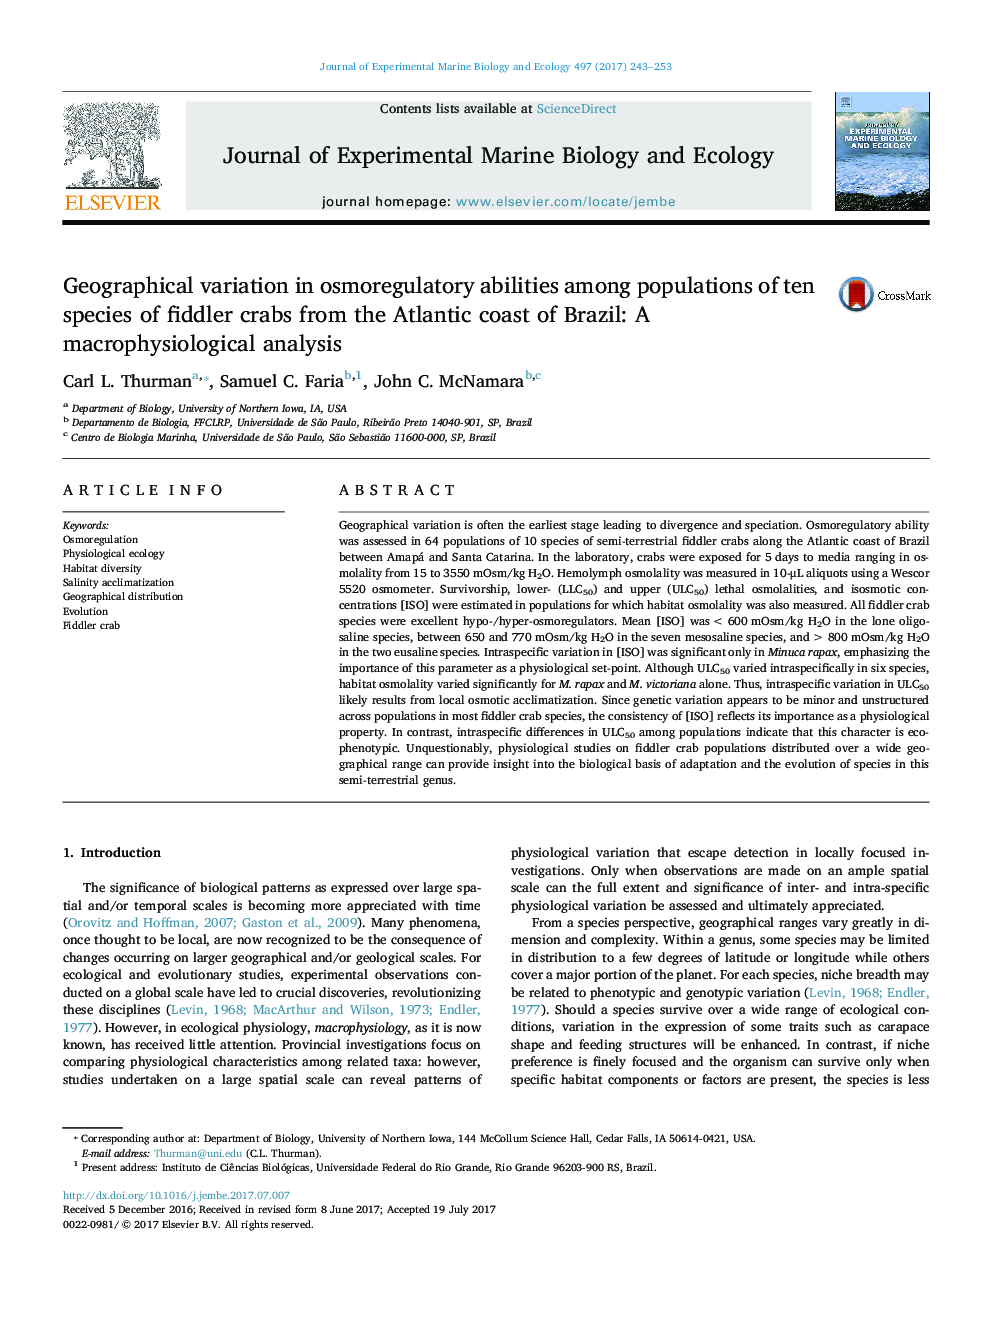 تنوع ژنتیکی در توانایی های اسمزی در میان جمعیت 10 گونه خرچنگ فیدلر از ساحل اقیانوس اطلس برزیل: تجزیه و تحلیل ماکرو فیزیولوژی 